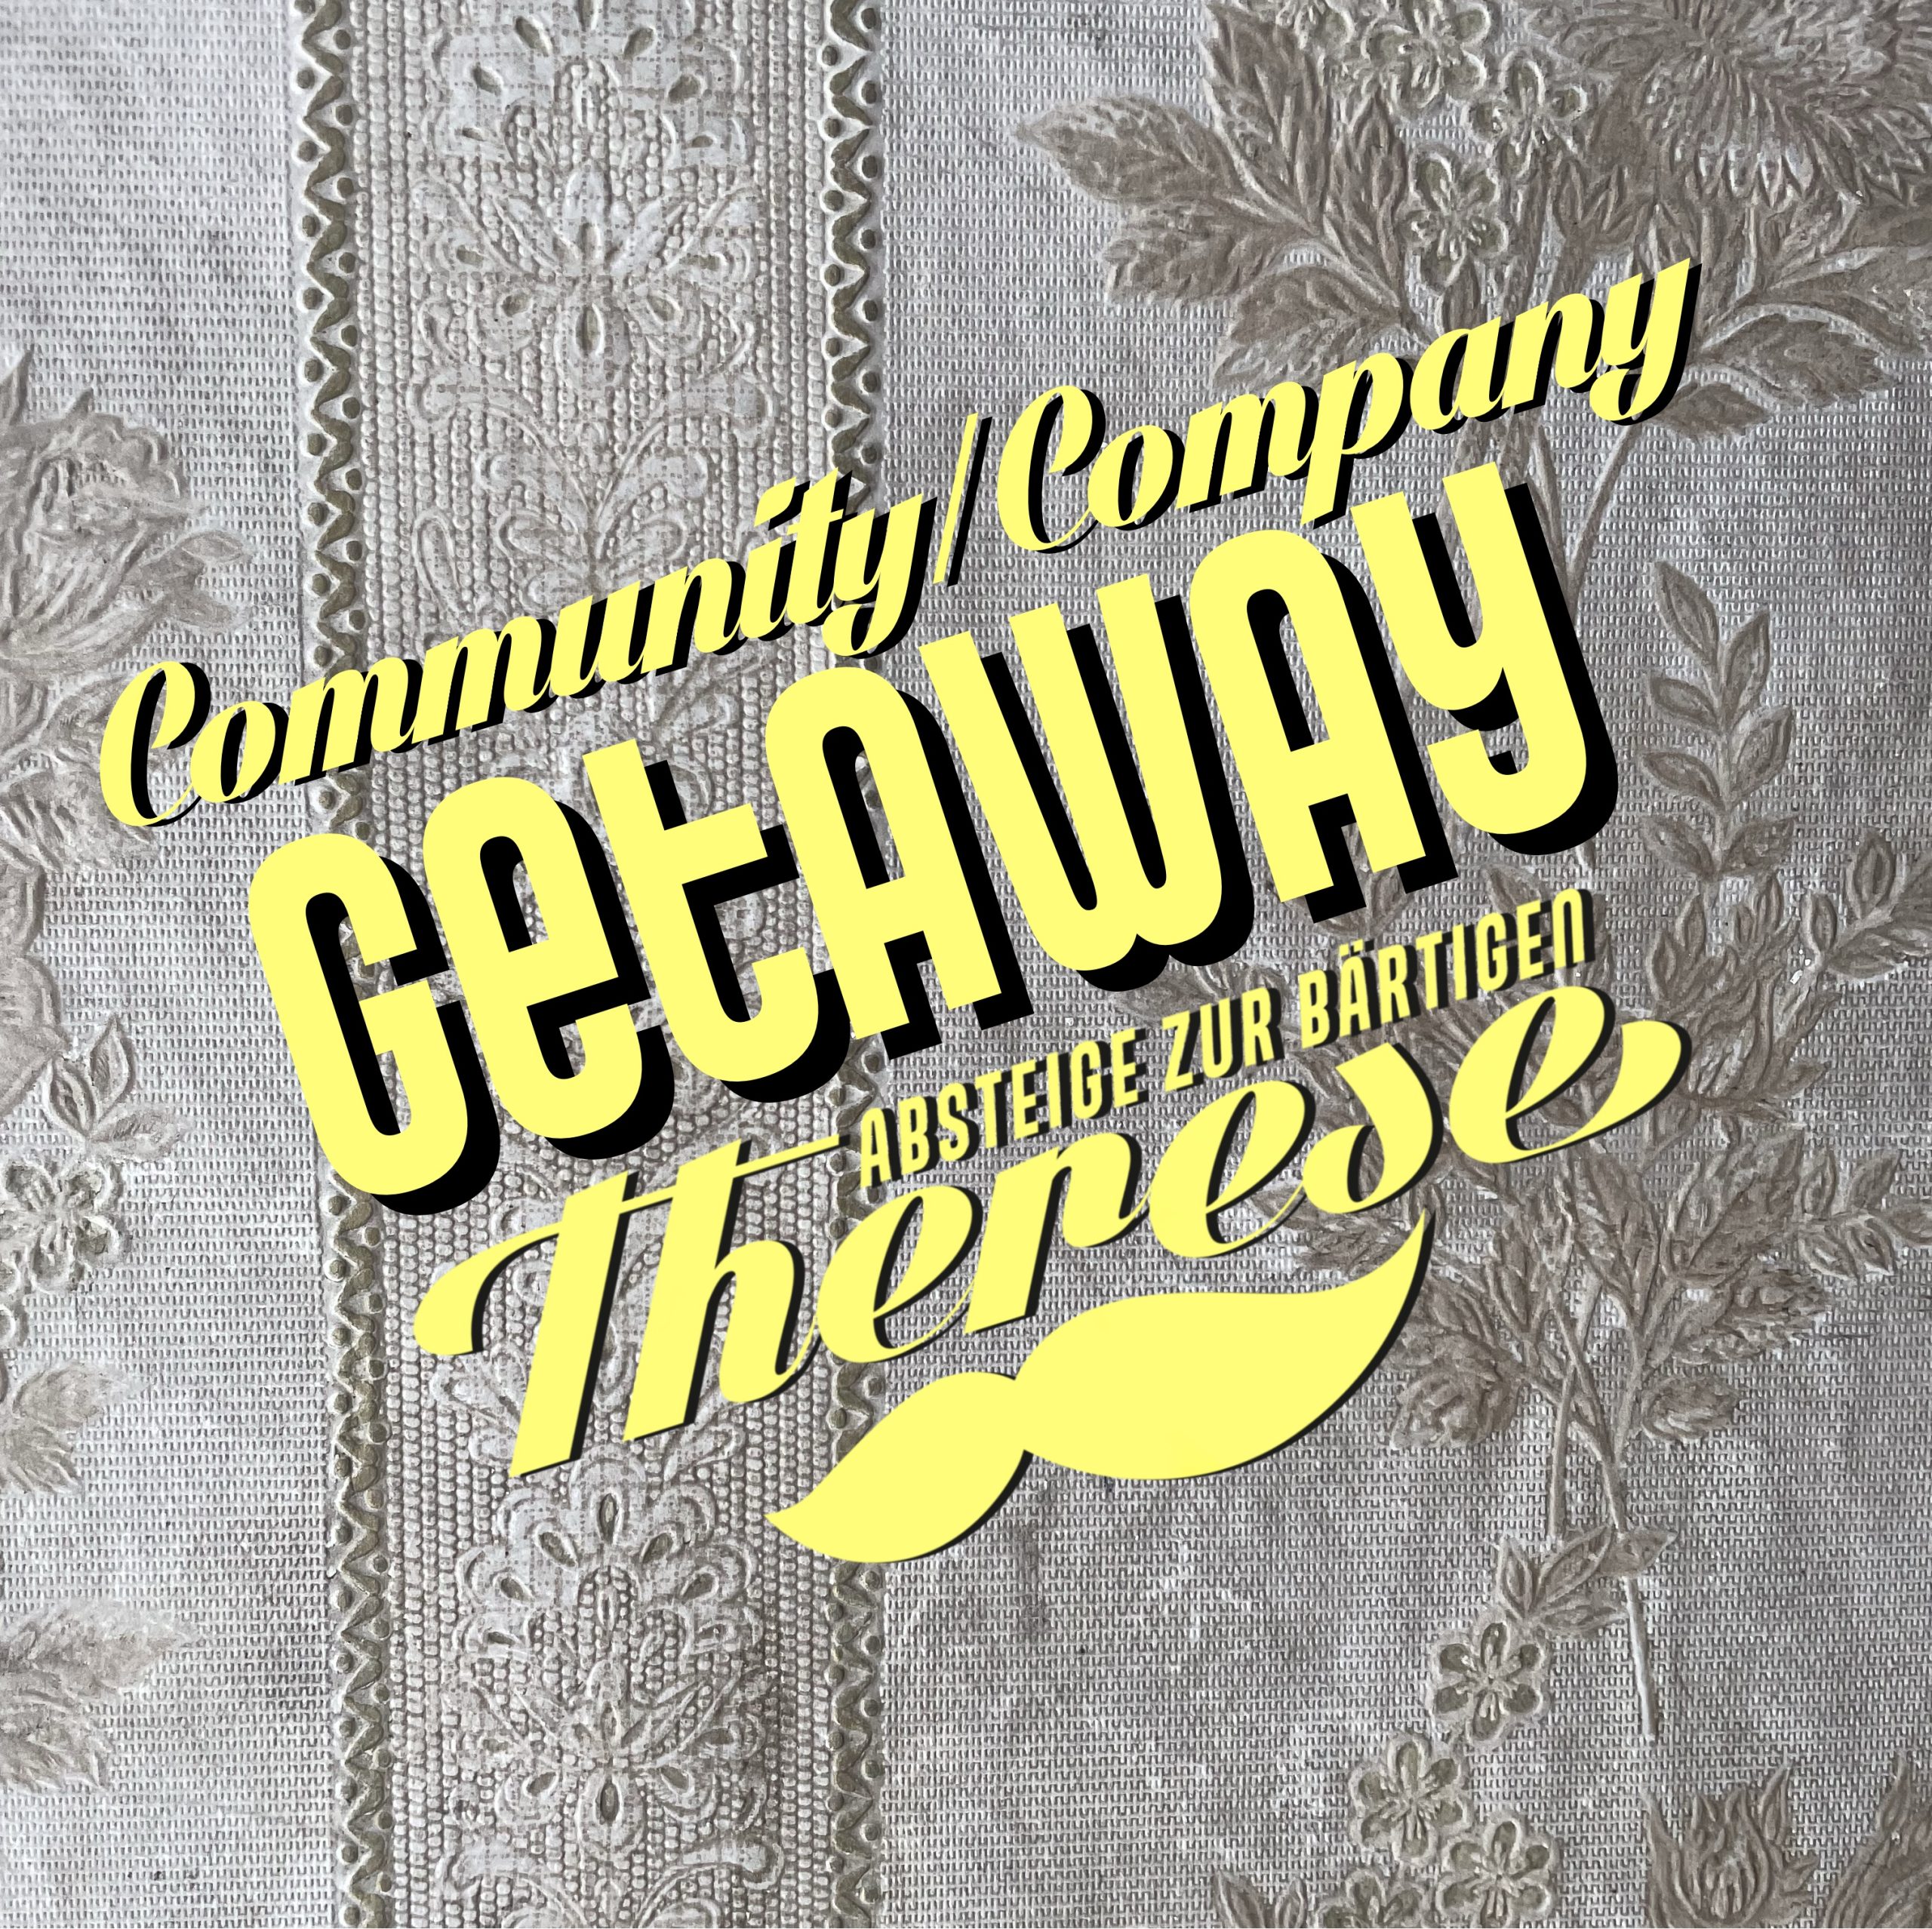 Community Getaway / Company Getaway II